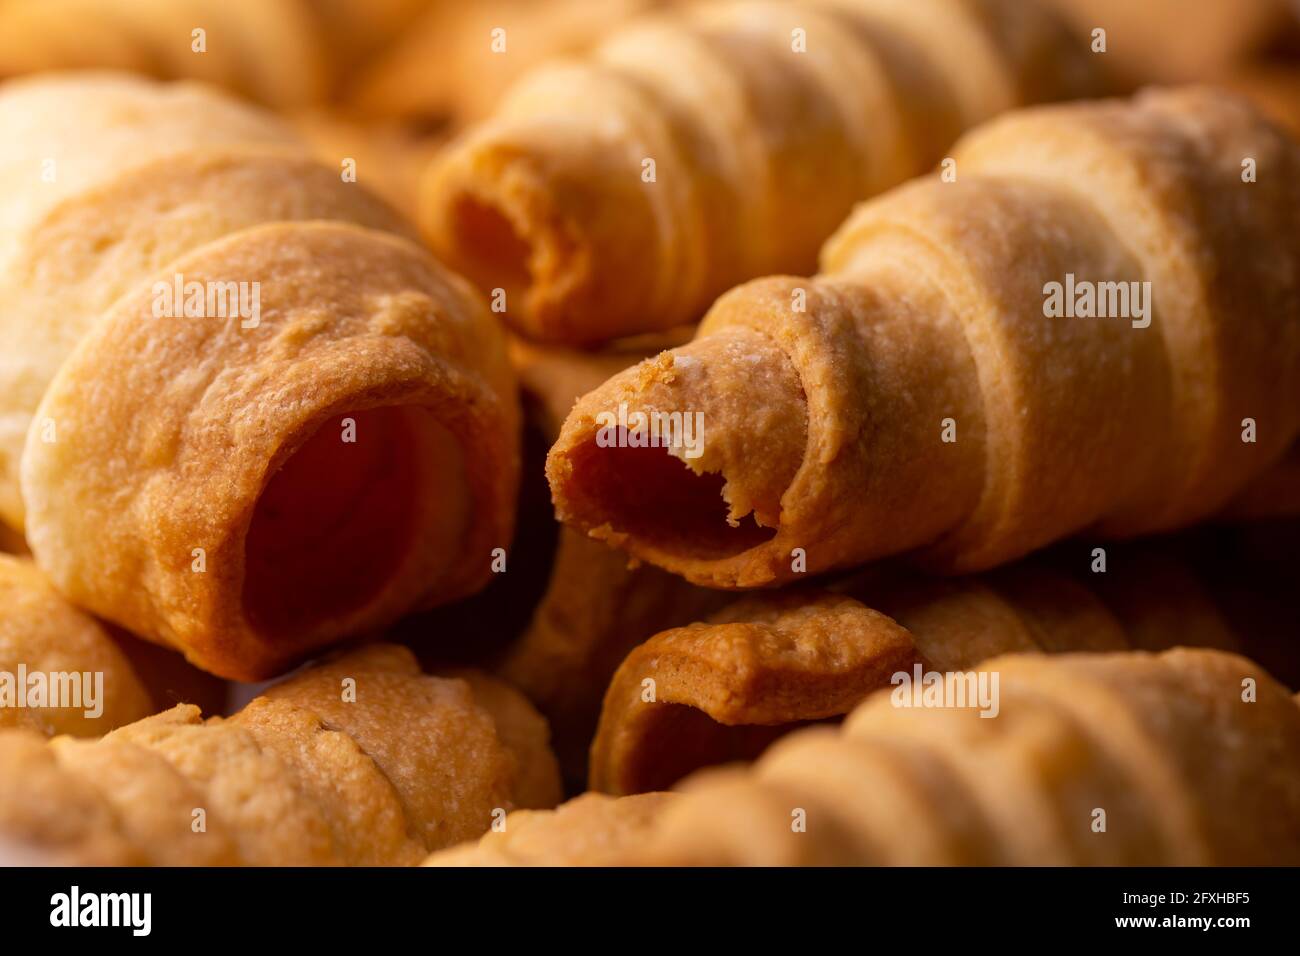 Viele süße hausgemachte Süßwarenröhrchen, die mit Creme gefüllt werden können. Foto aufgenommen unter weichem Kunstlicht. Stockfoto